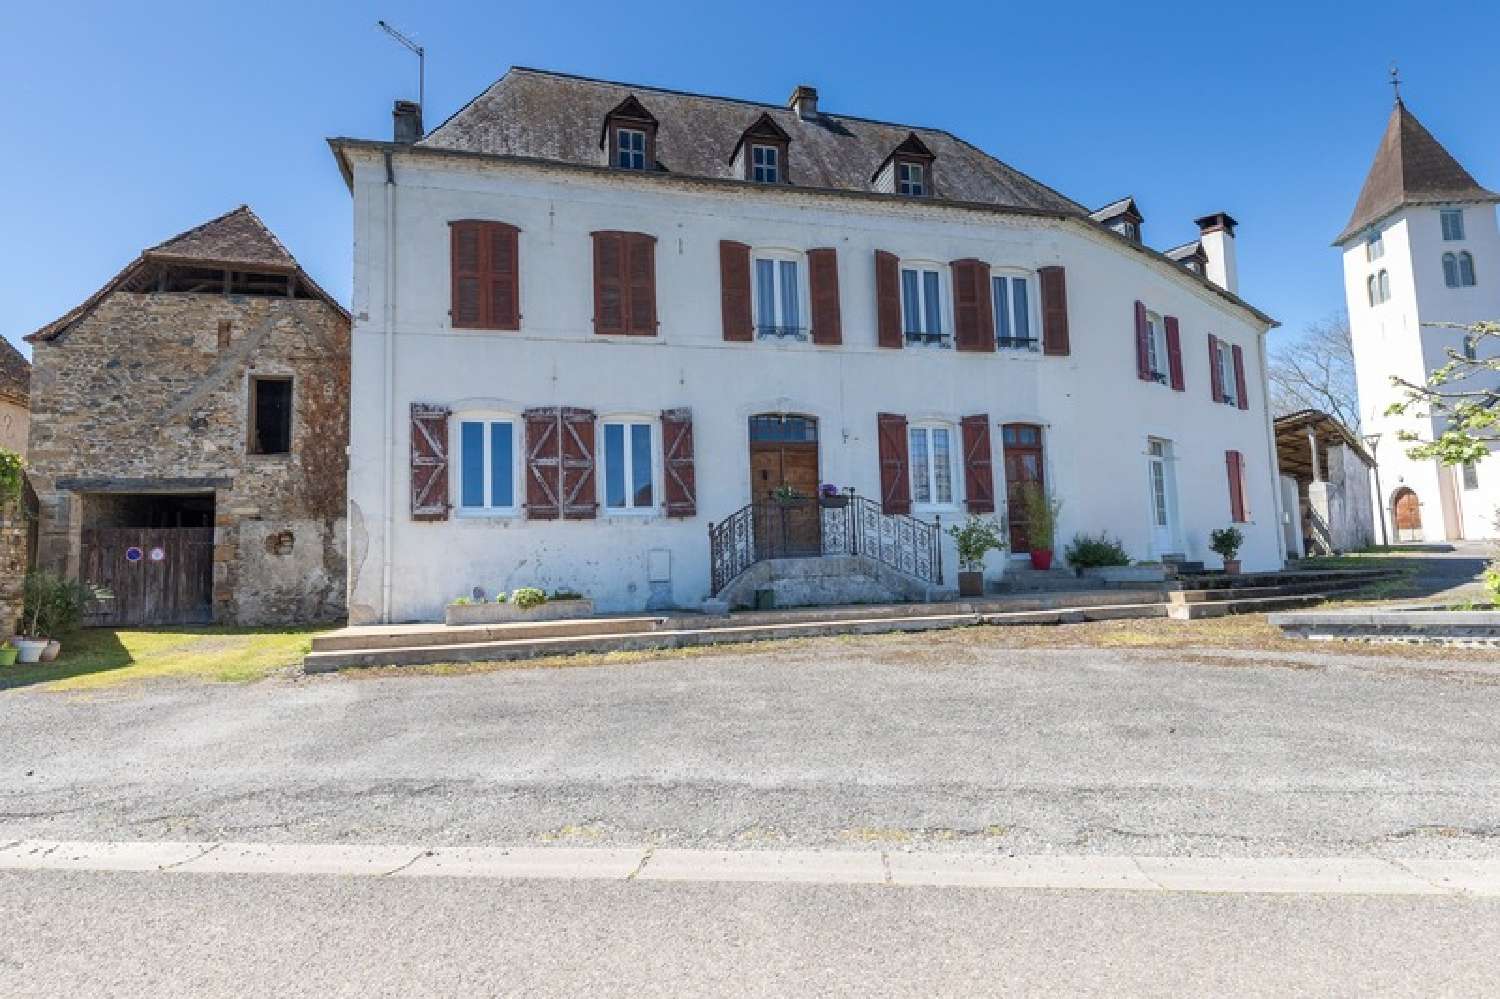  for sale village house Sus Pyrénées-Atlantiques 1